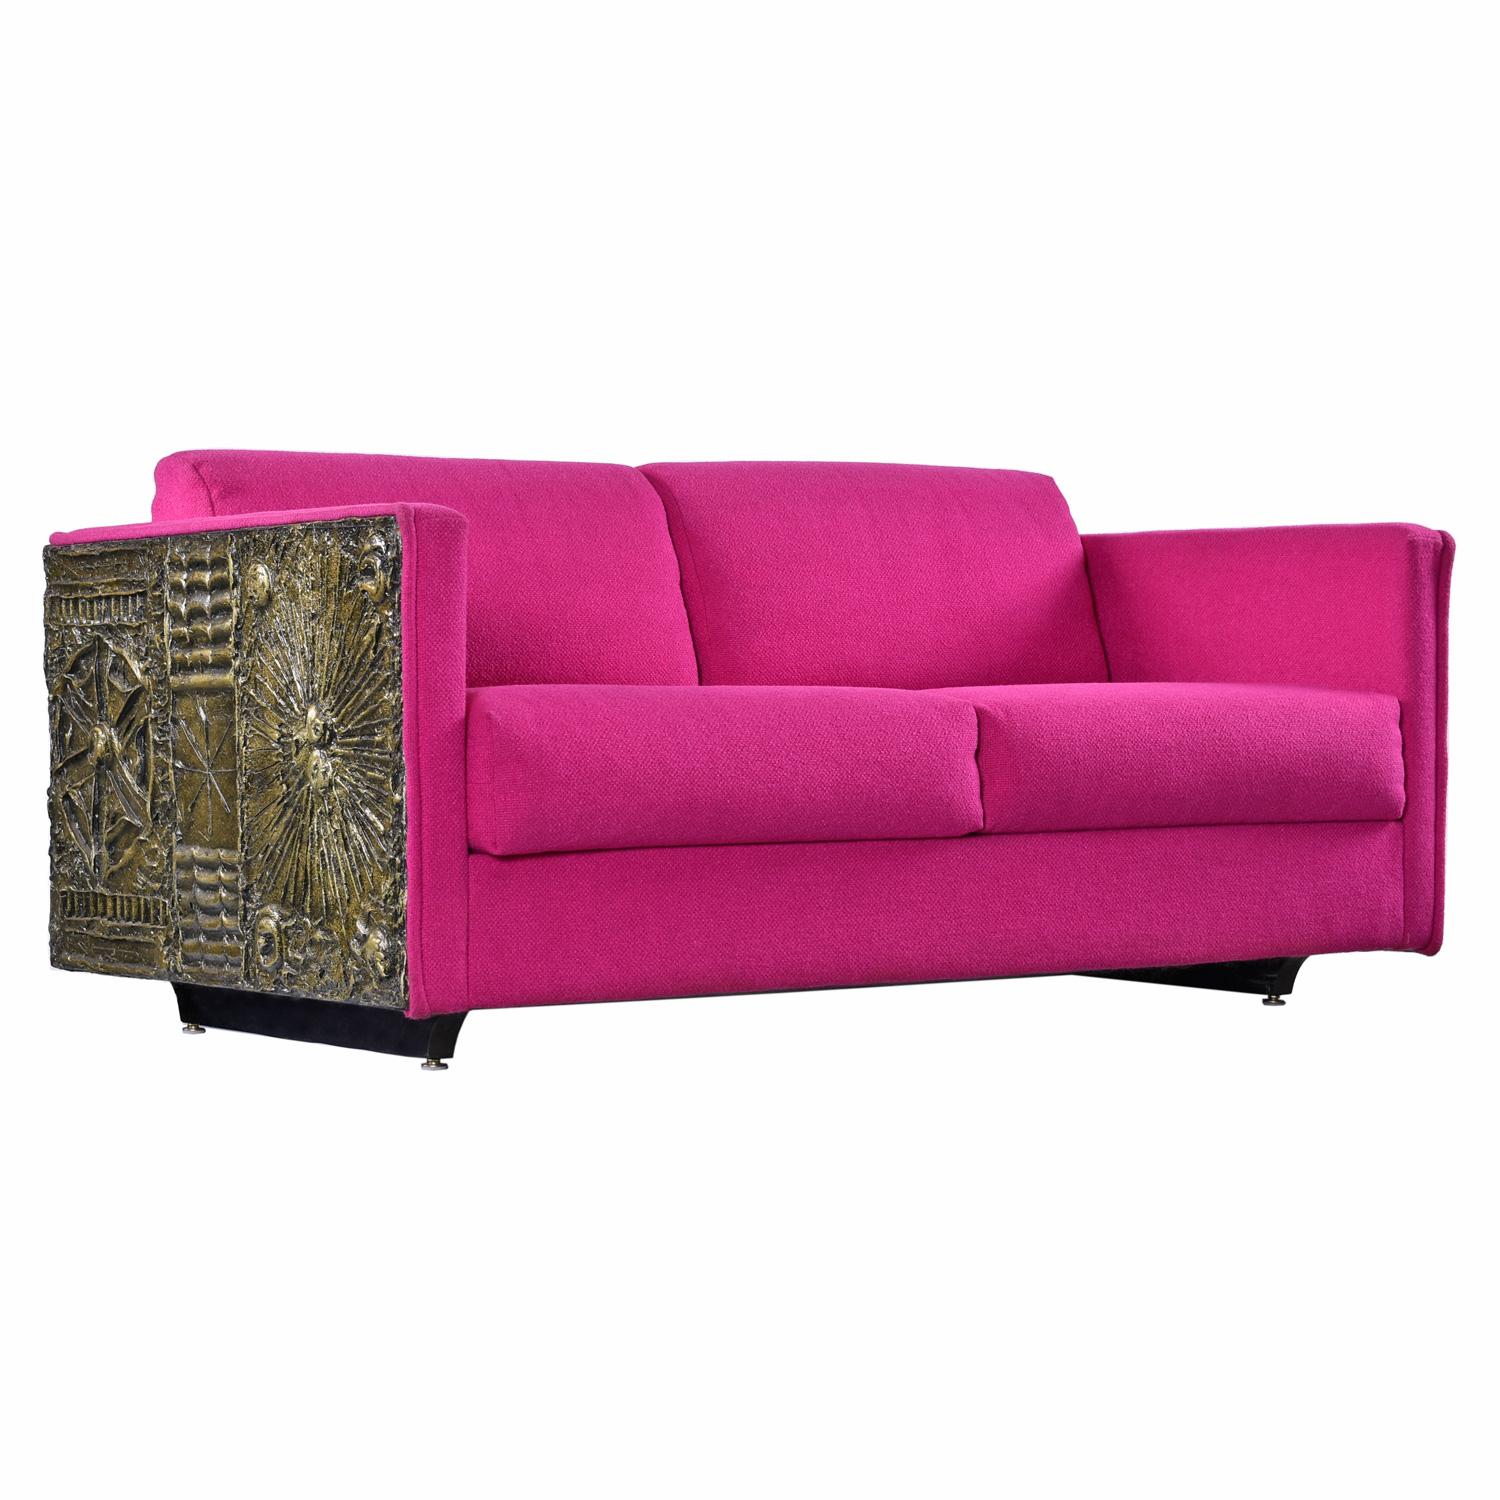 Sie werden nirgendwo eine schönere Originalversion dieses Adrian Pearsall Brutalist loveseat sofa finden.  Das stimmt, dieser wunderbare rosa Wollstoff wurde vom ursprünglichen Besitzer handverlesen und die Craft Associates-Etiketten befinden sich